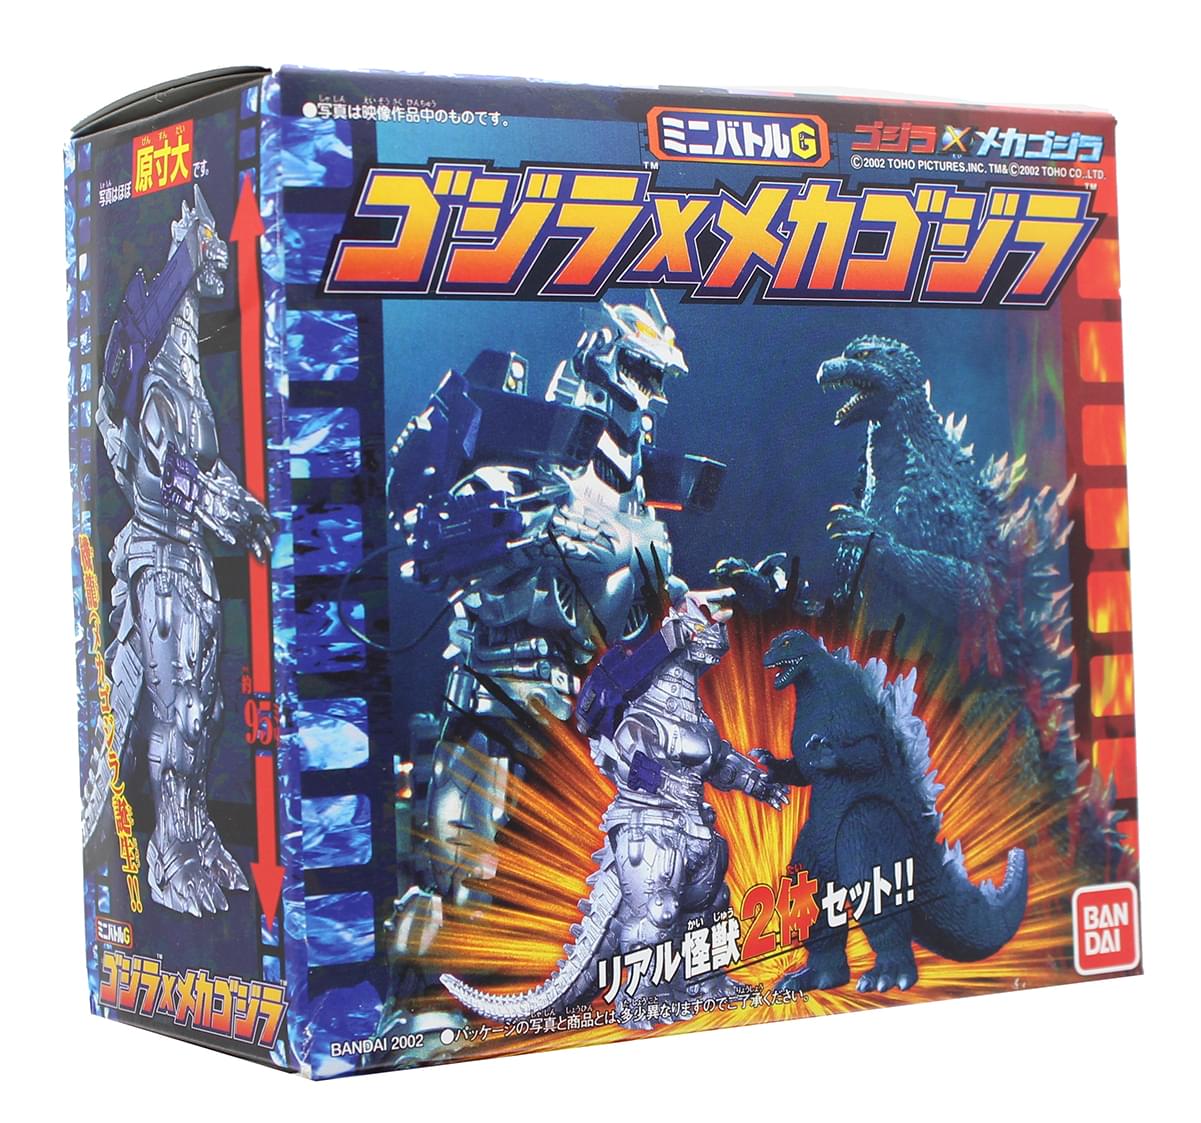 Godzilla Bandai Mini Battle G Figure Set - Godzilla x MechaGodzilla